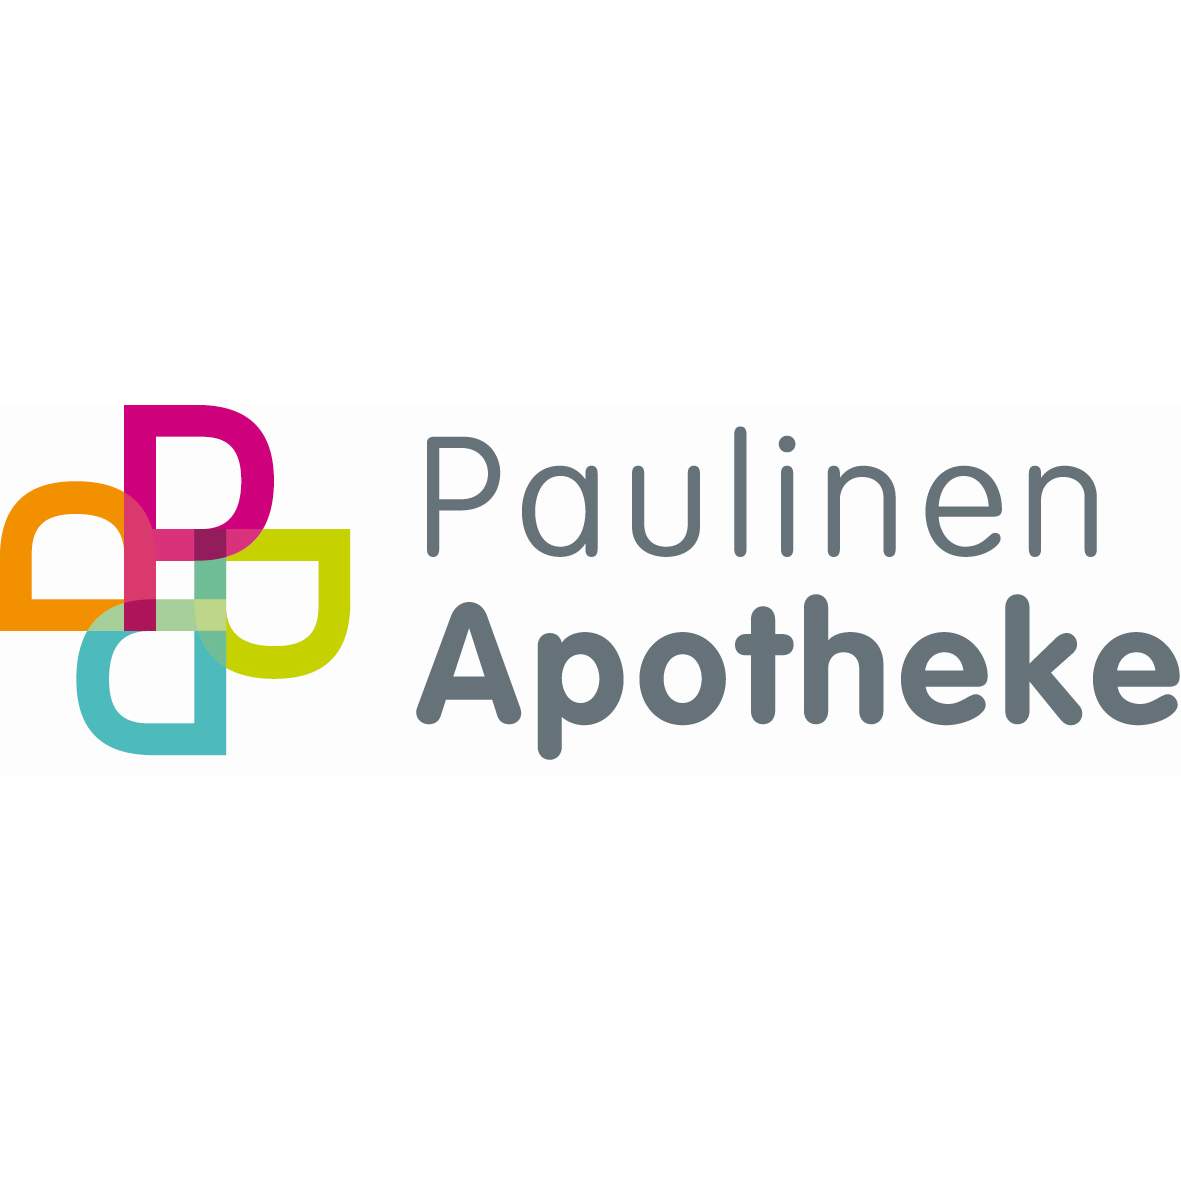 Paulinen Apotheke in Detmold - Logo